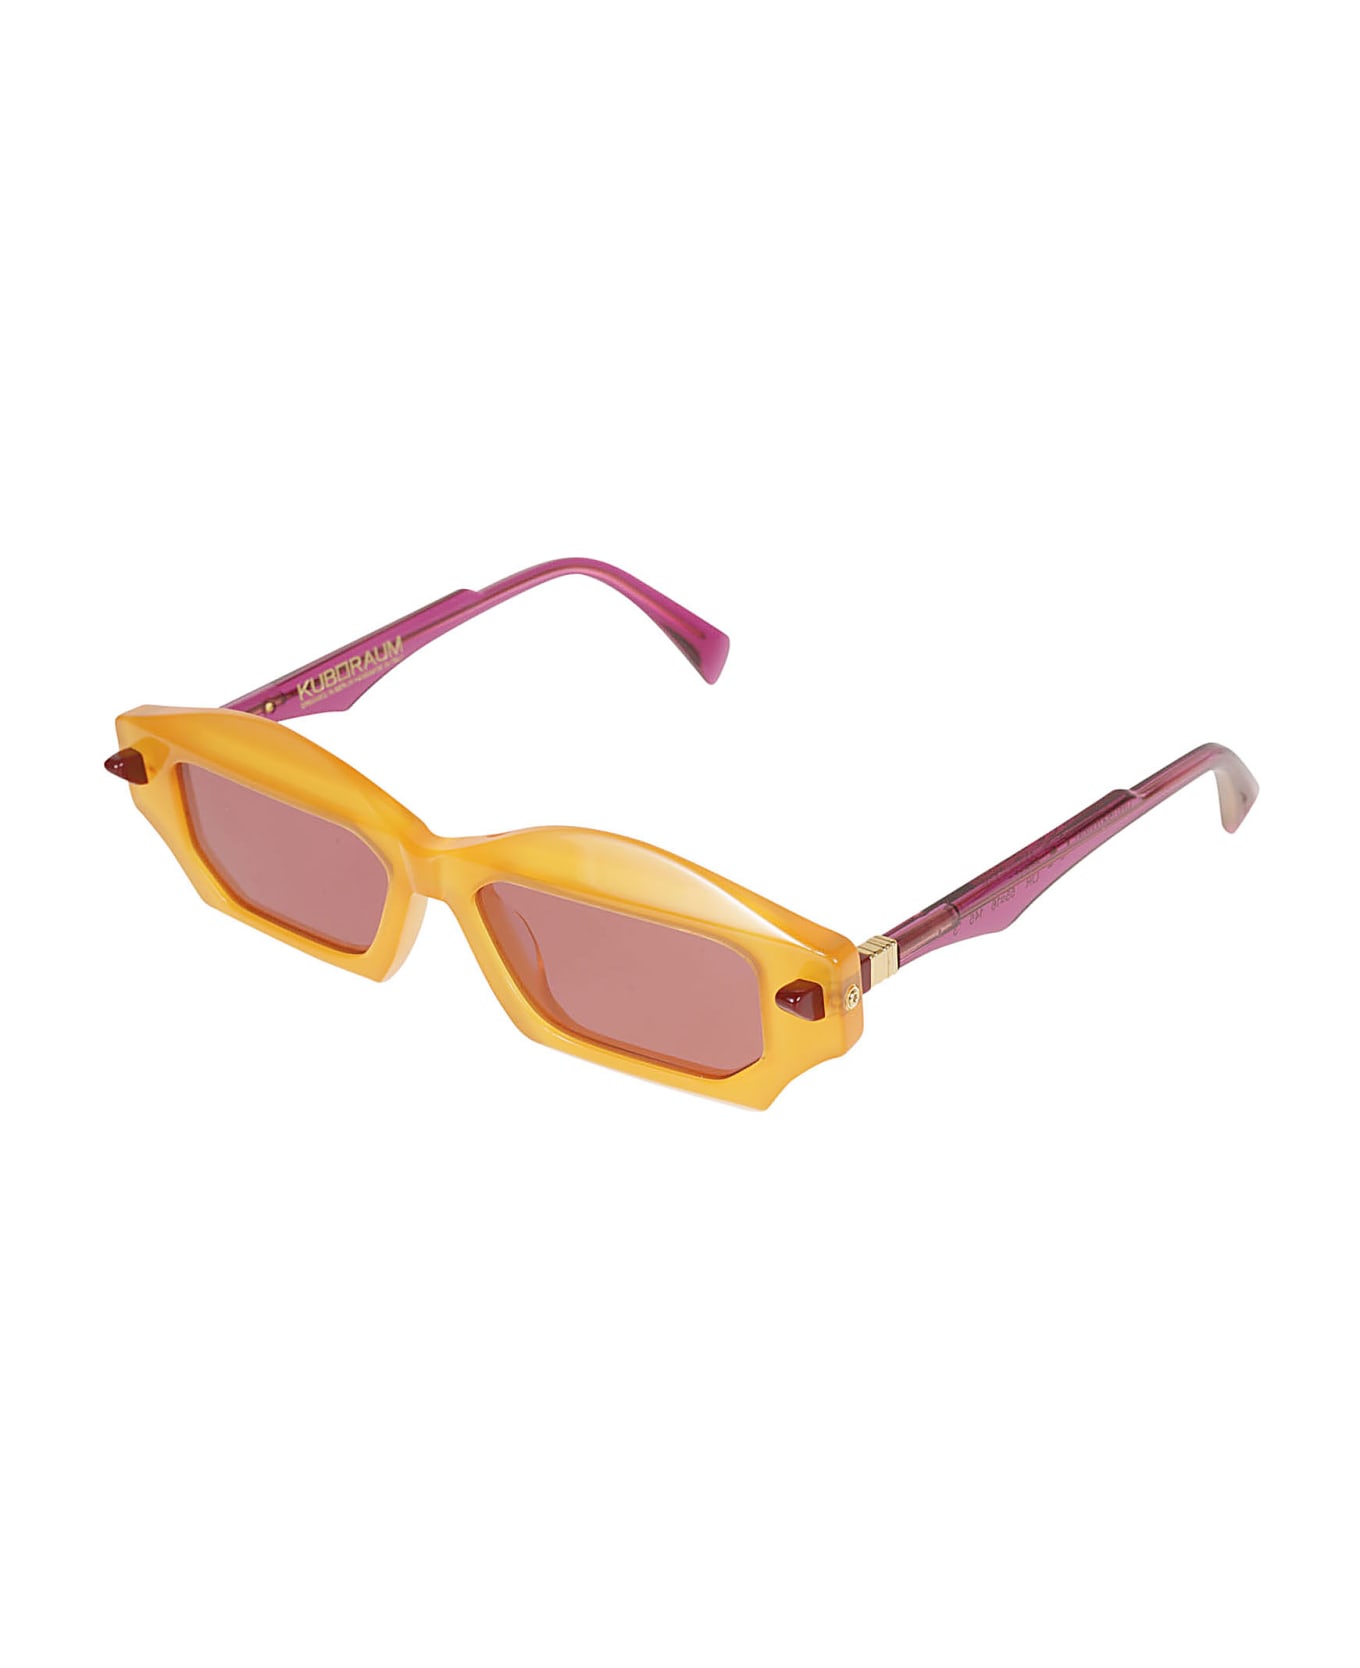 Kuboraum Square Thick Sunglasses - Pink/Black